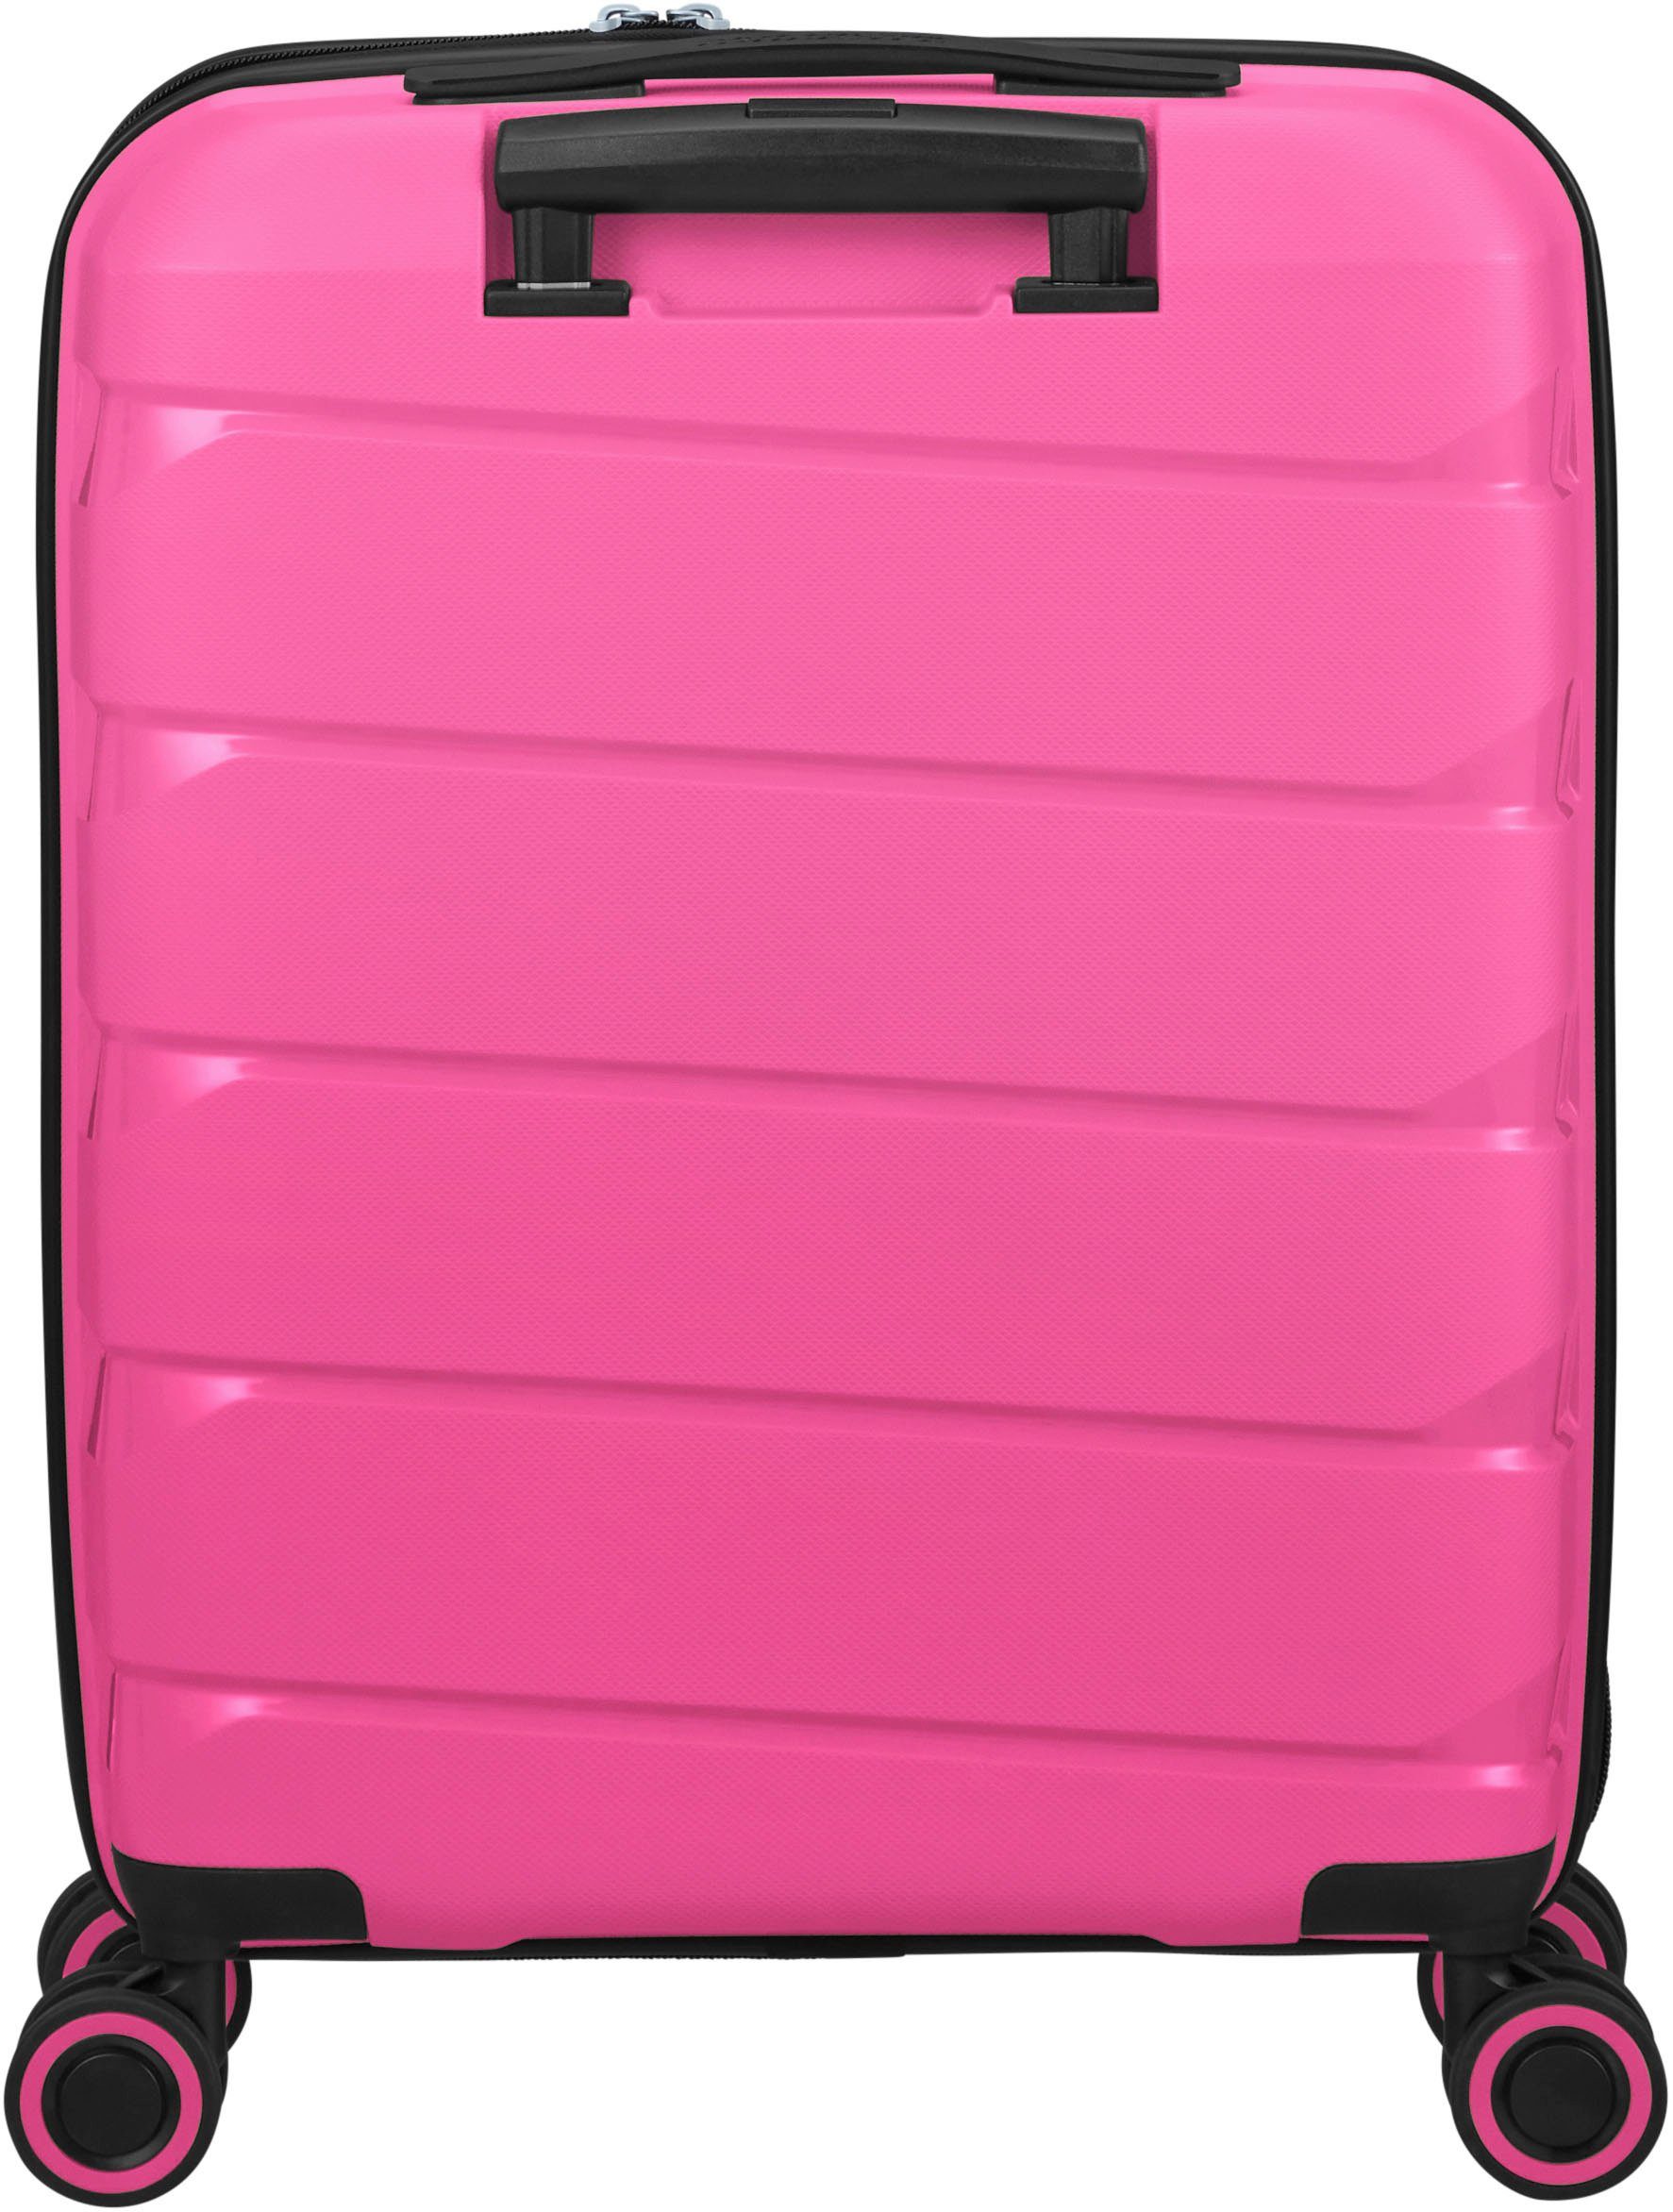 American Tourister® Hartschalen-Trolley Air Move, Peace Pink 55 cm, 4 Rollen